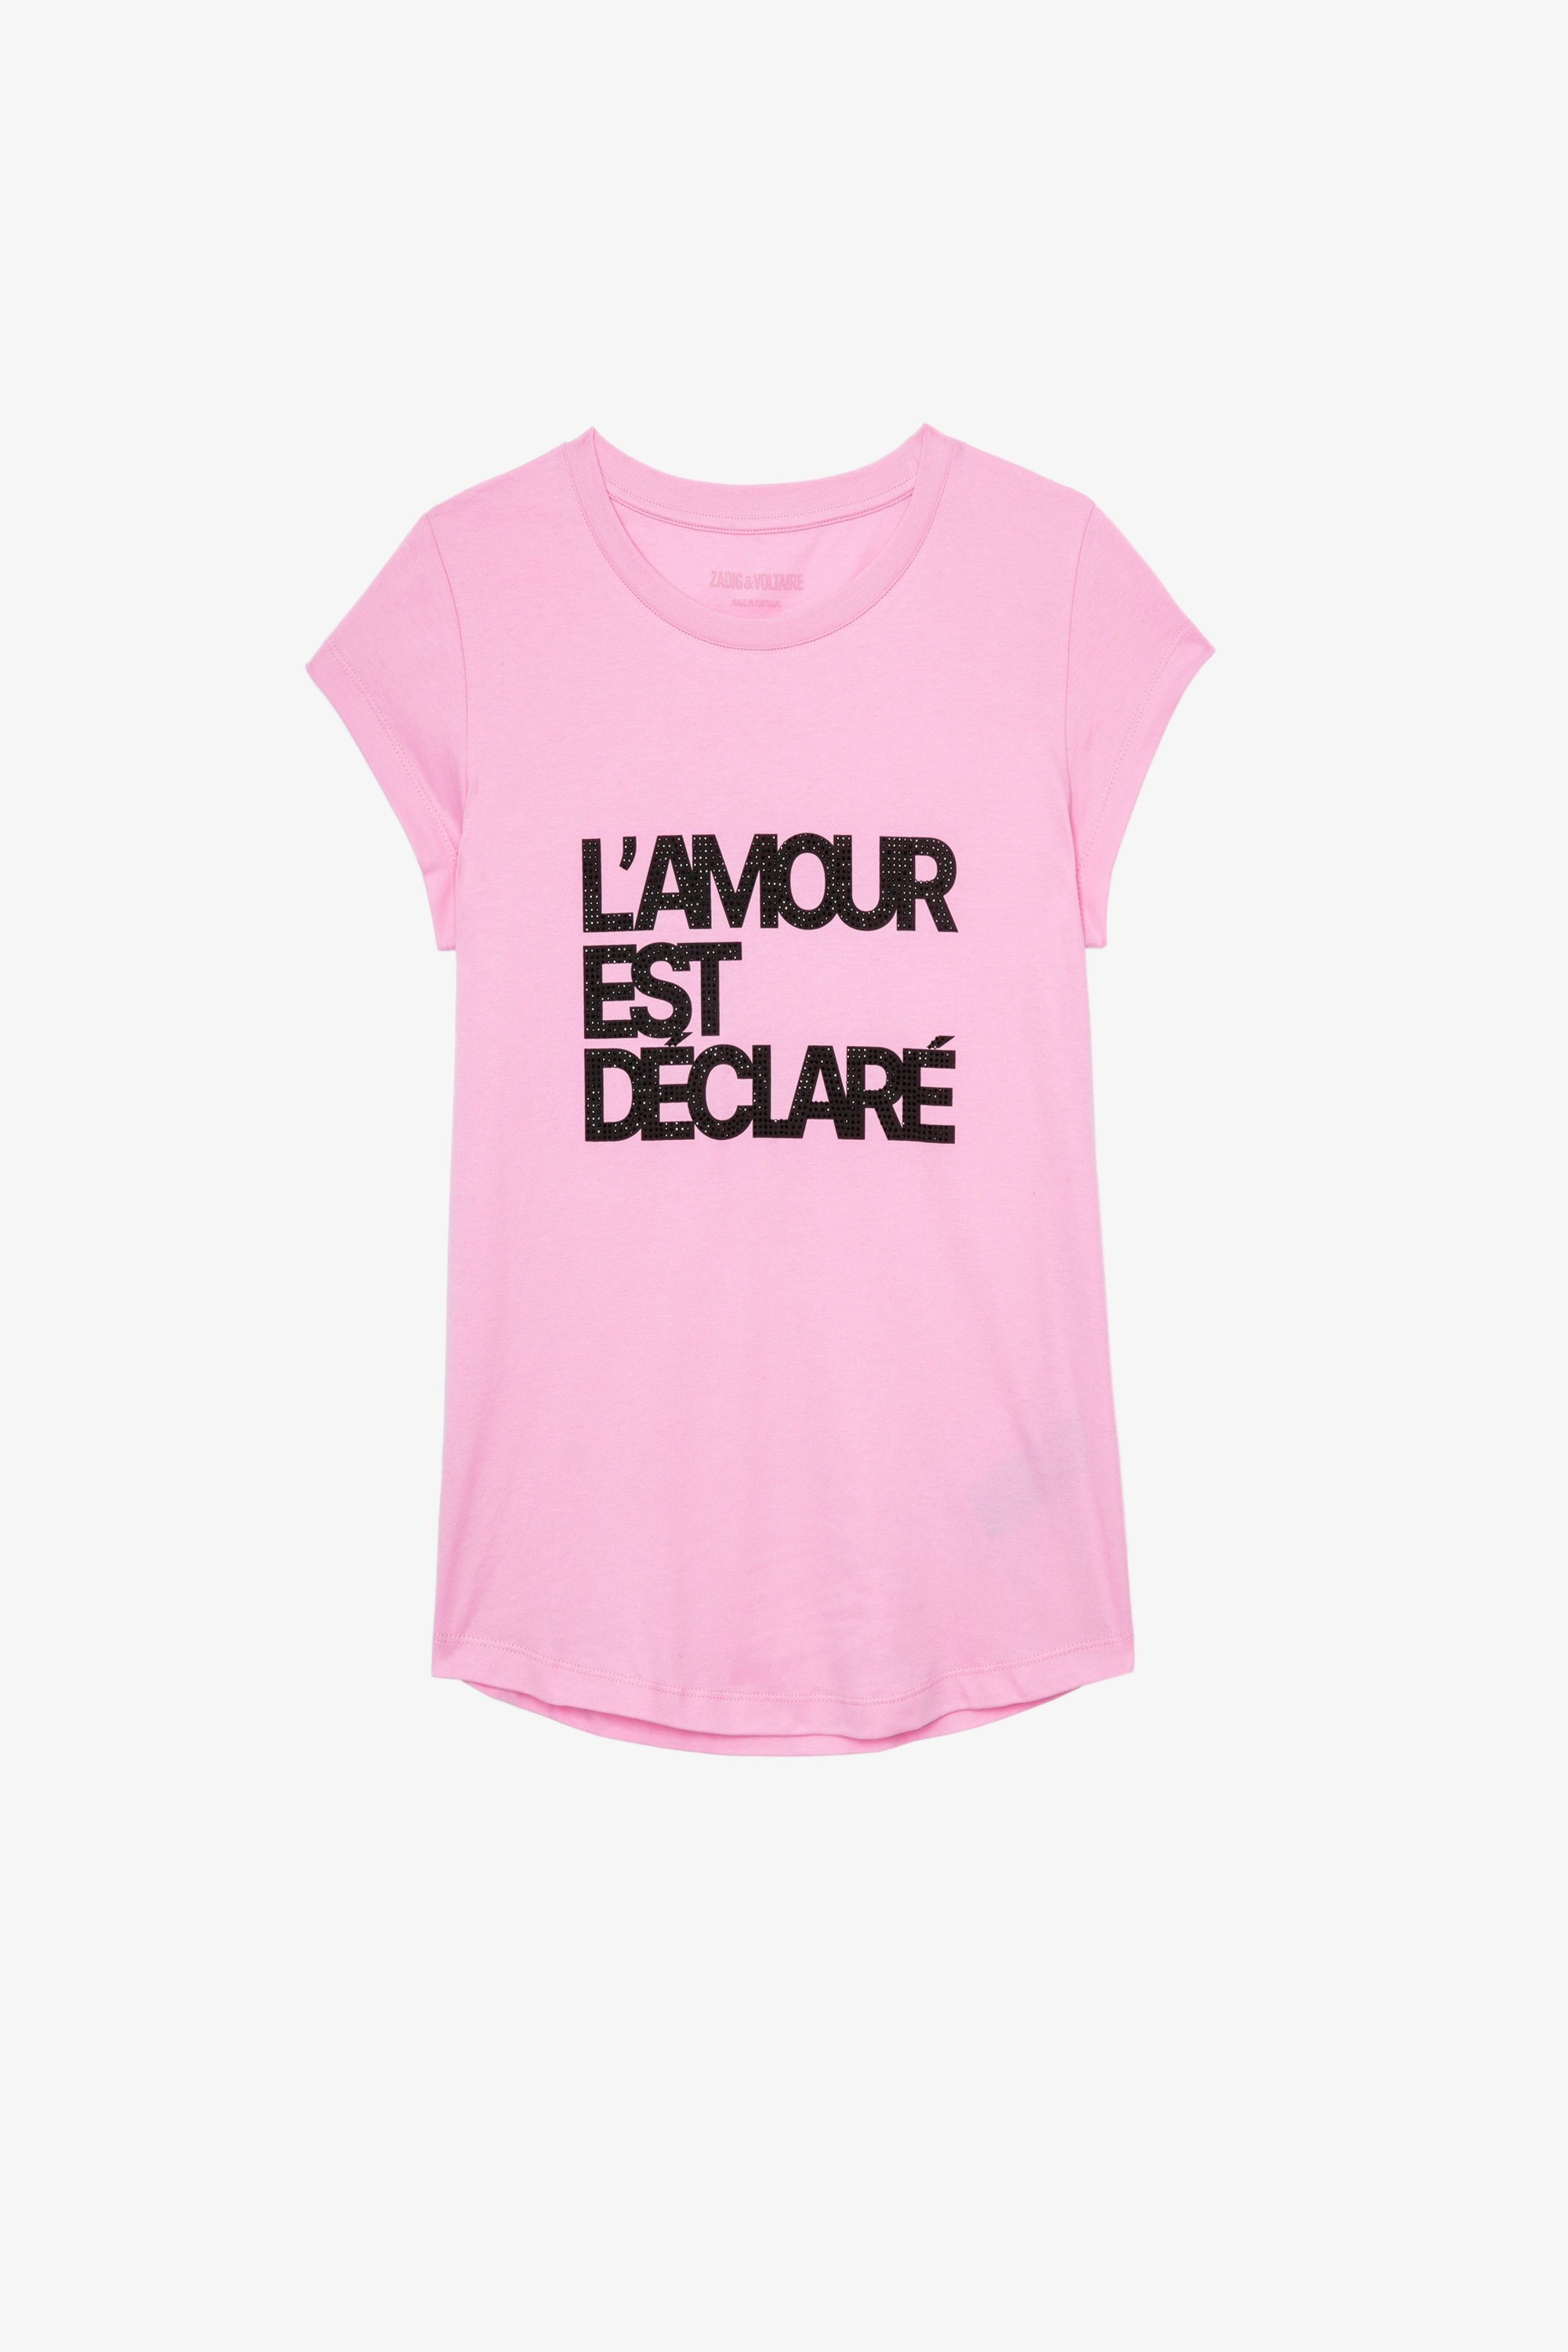 T-Shirt Skinny L'amour est déclaré Damen-T-Shirt aus rosafarbener Baumwolle mit Strassapplikation „L'amour est déclaré“